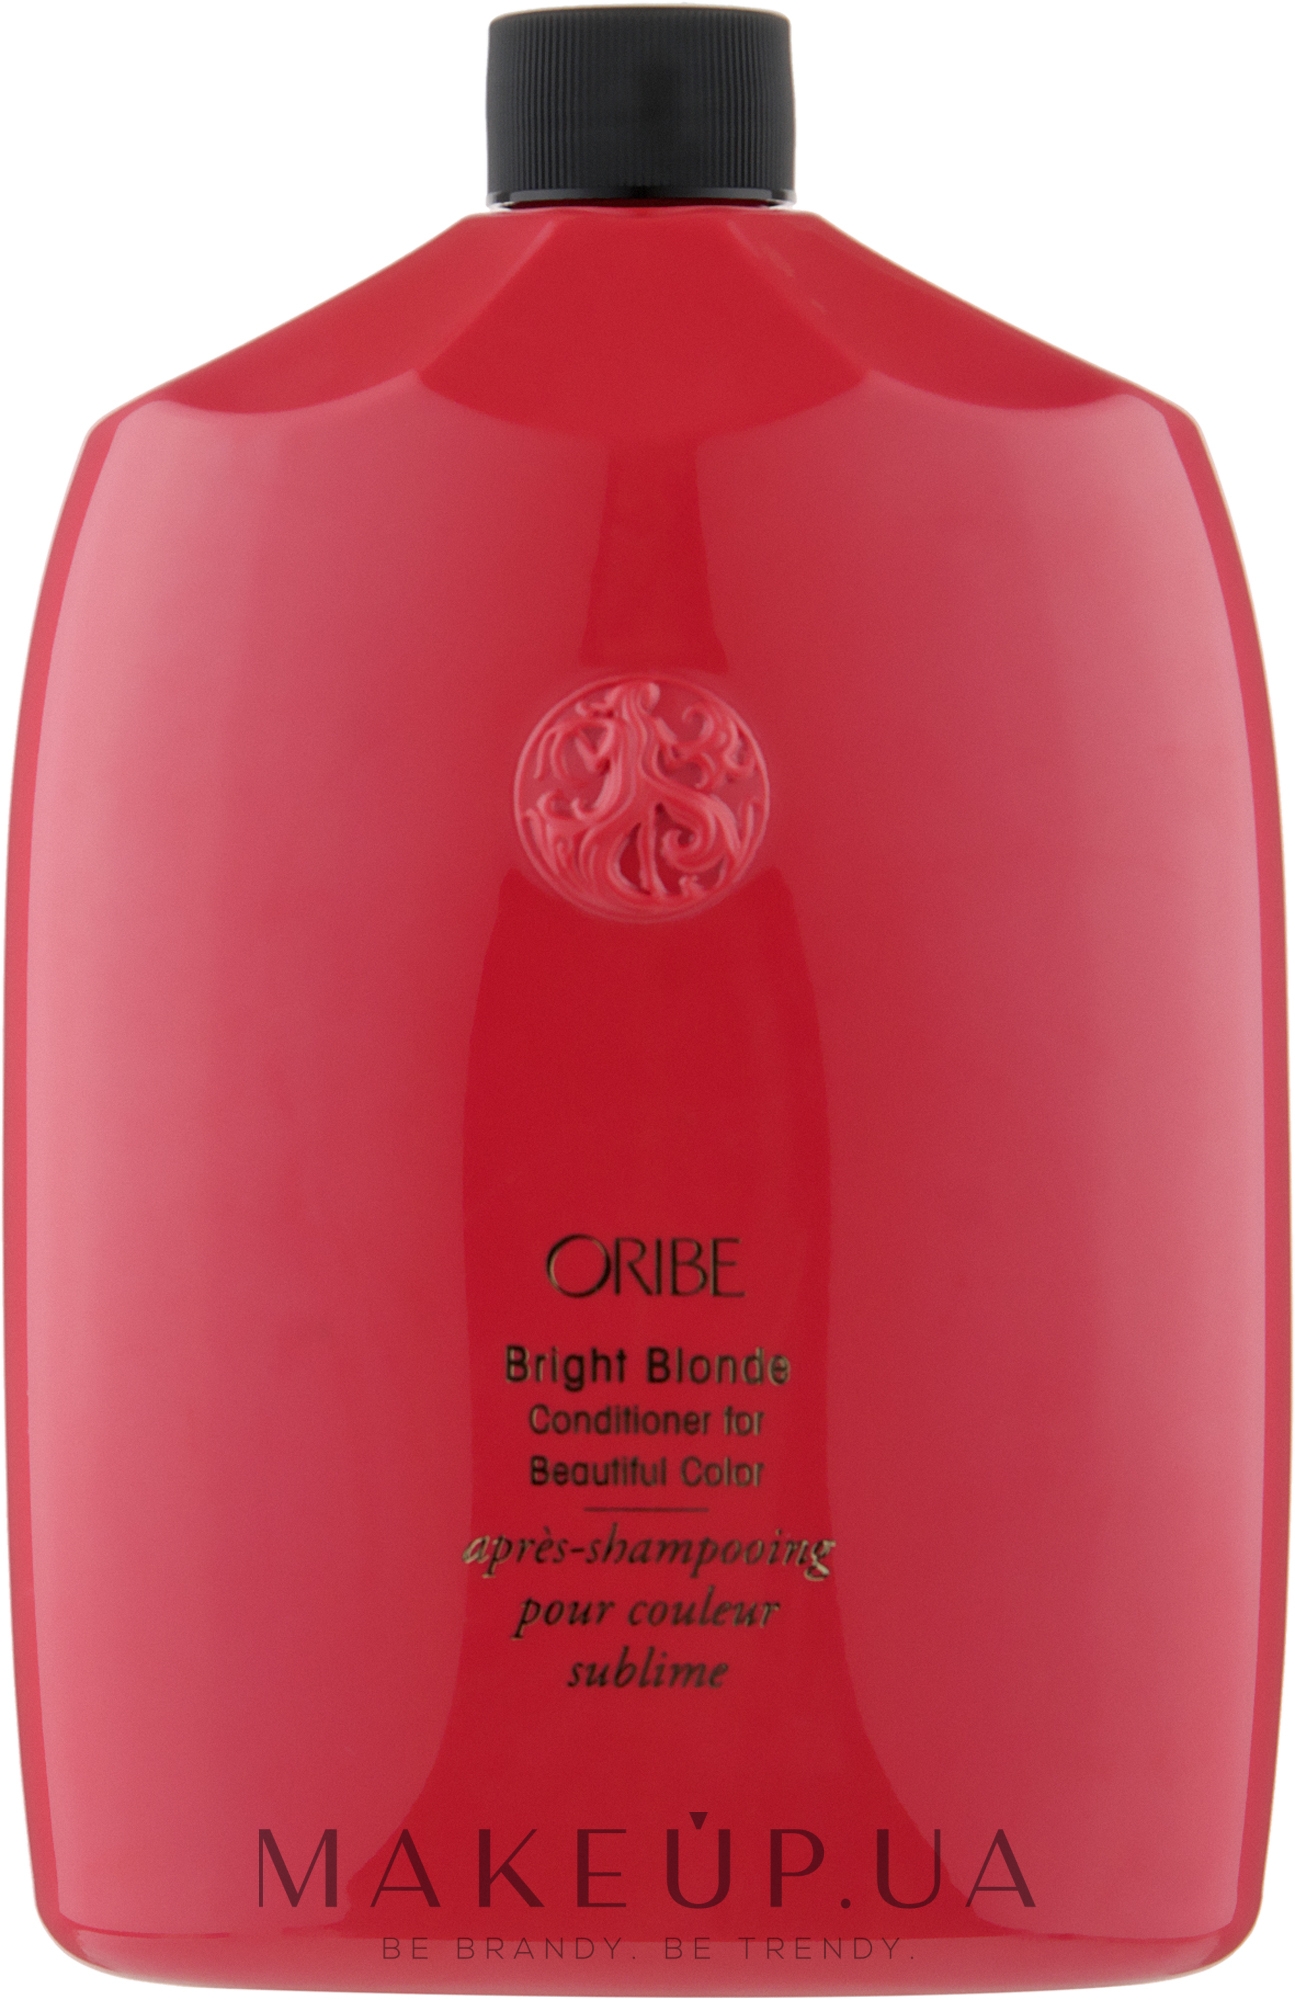 Кондиционер для светлых волос "Великолепие цвета" - Oribe Bright Blonde Conditioner for Beautiful Color  — фото 1000ml